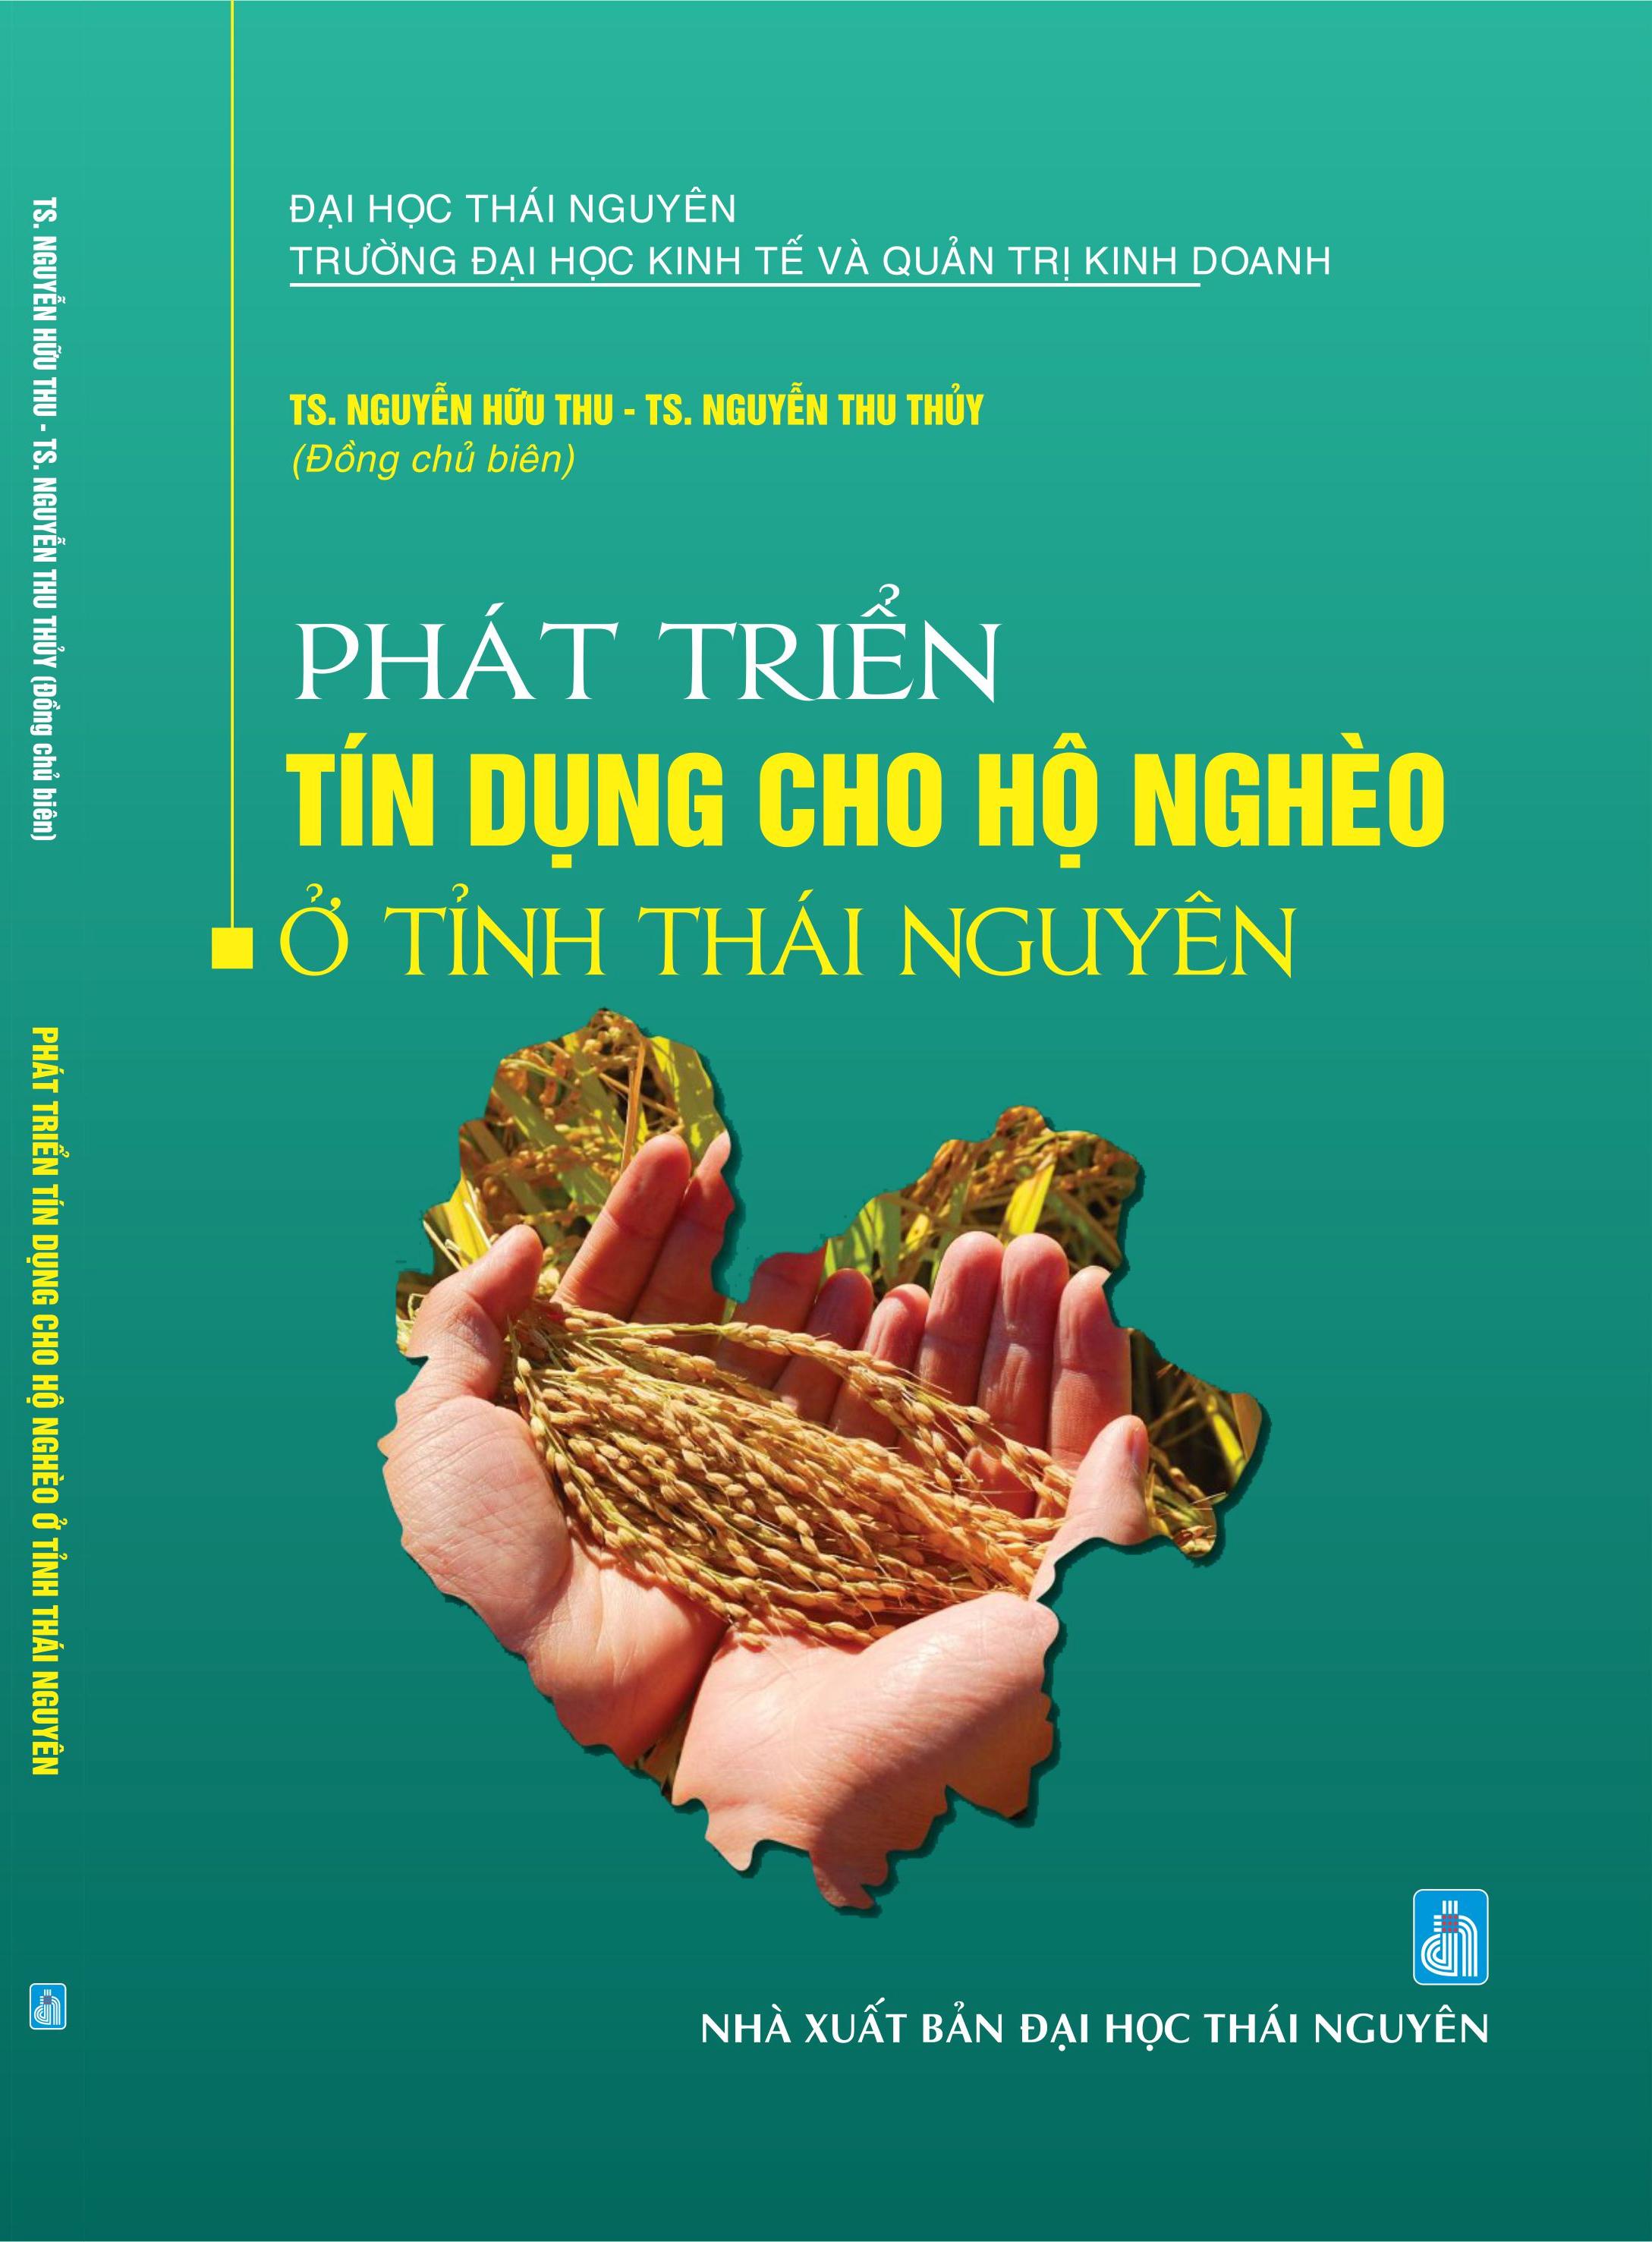 Phát triển tín dụng cho hộ nghèo ở tỉnh Thái Nguyên